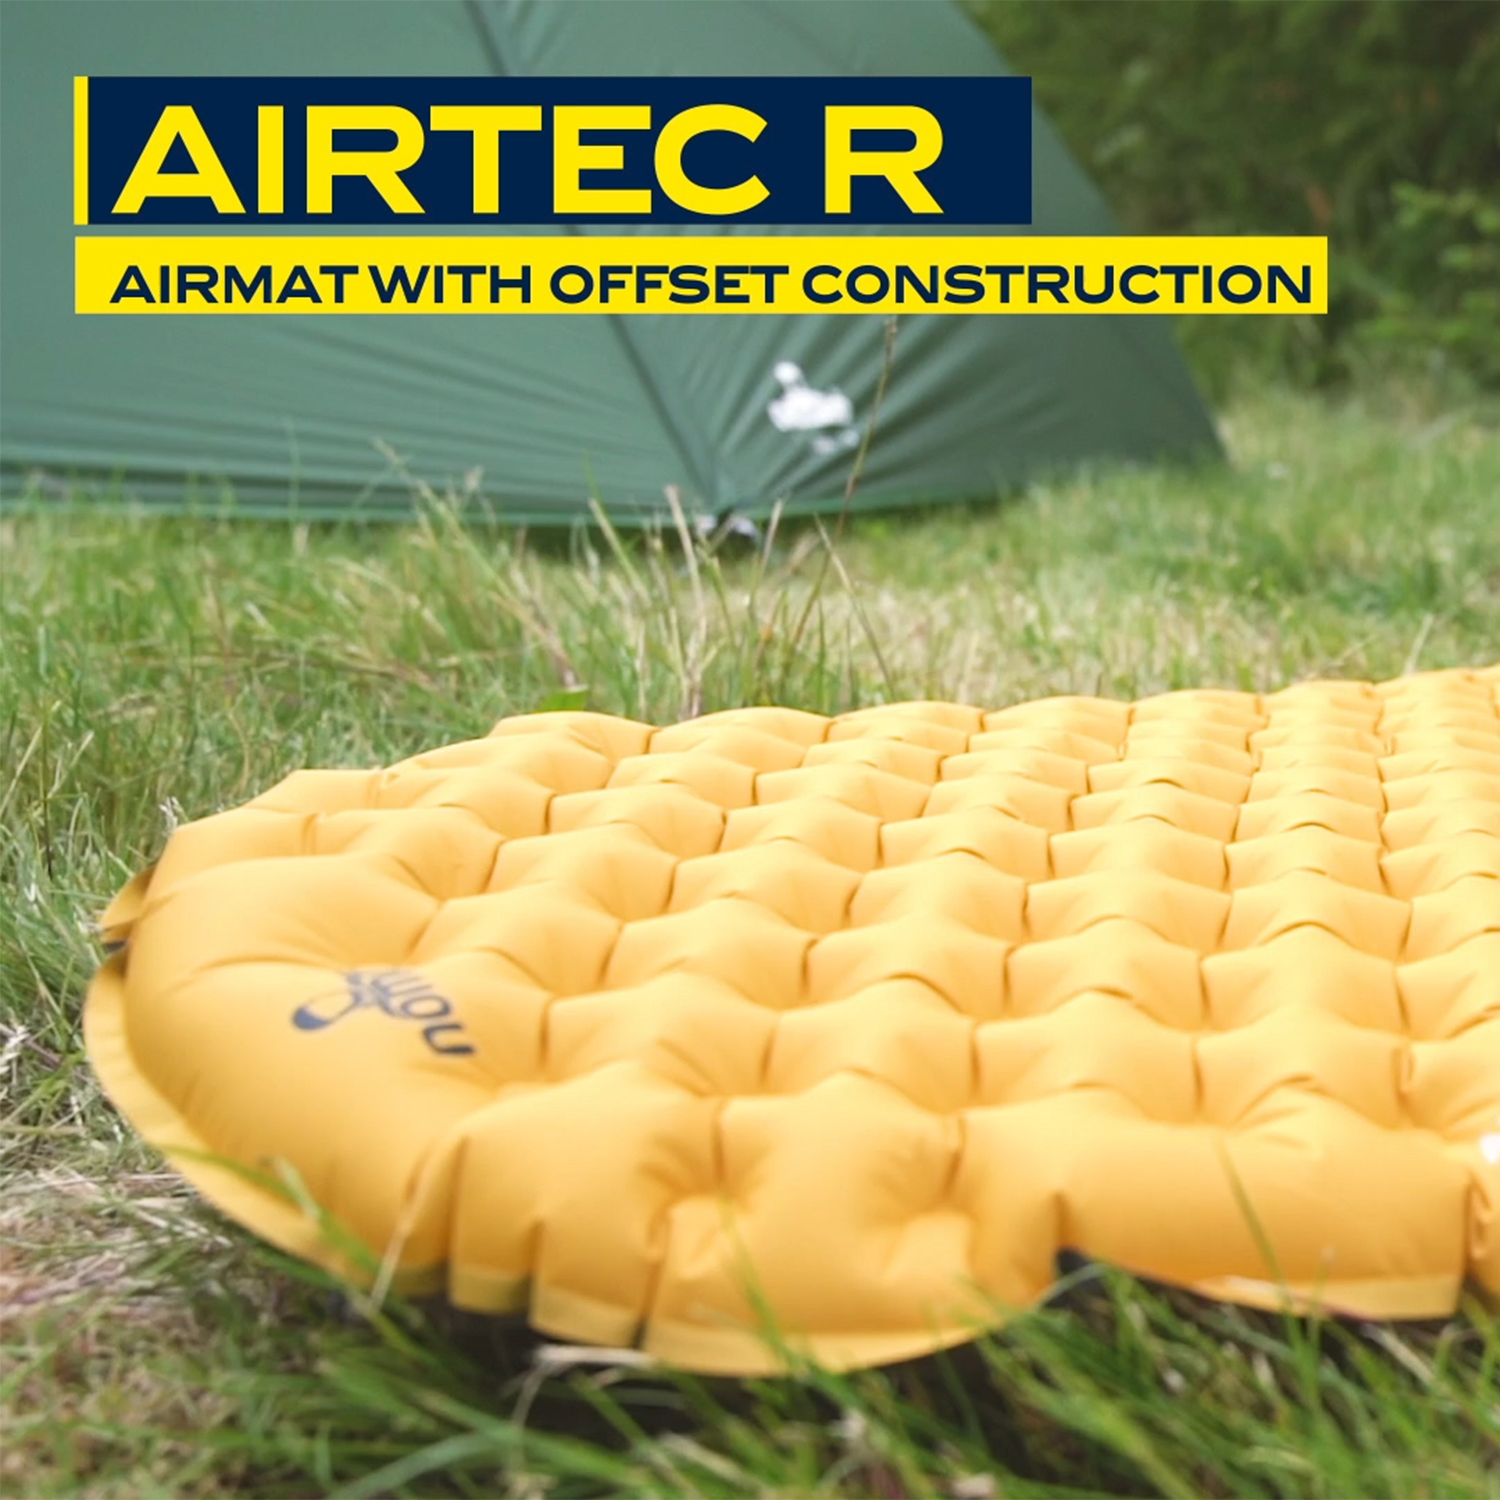 Airtec R